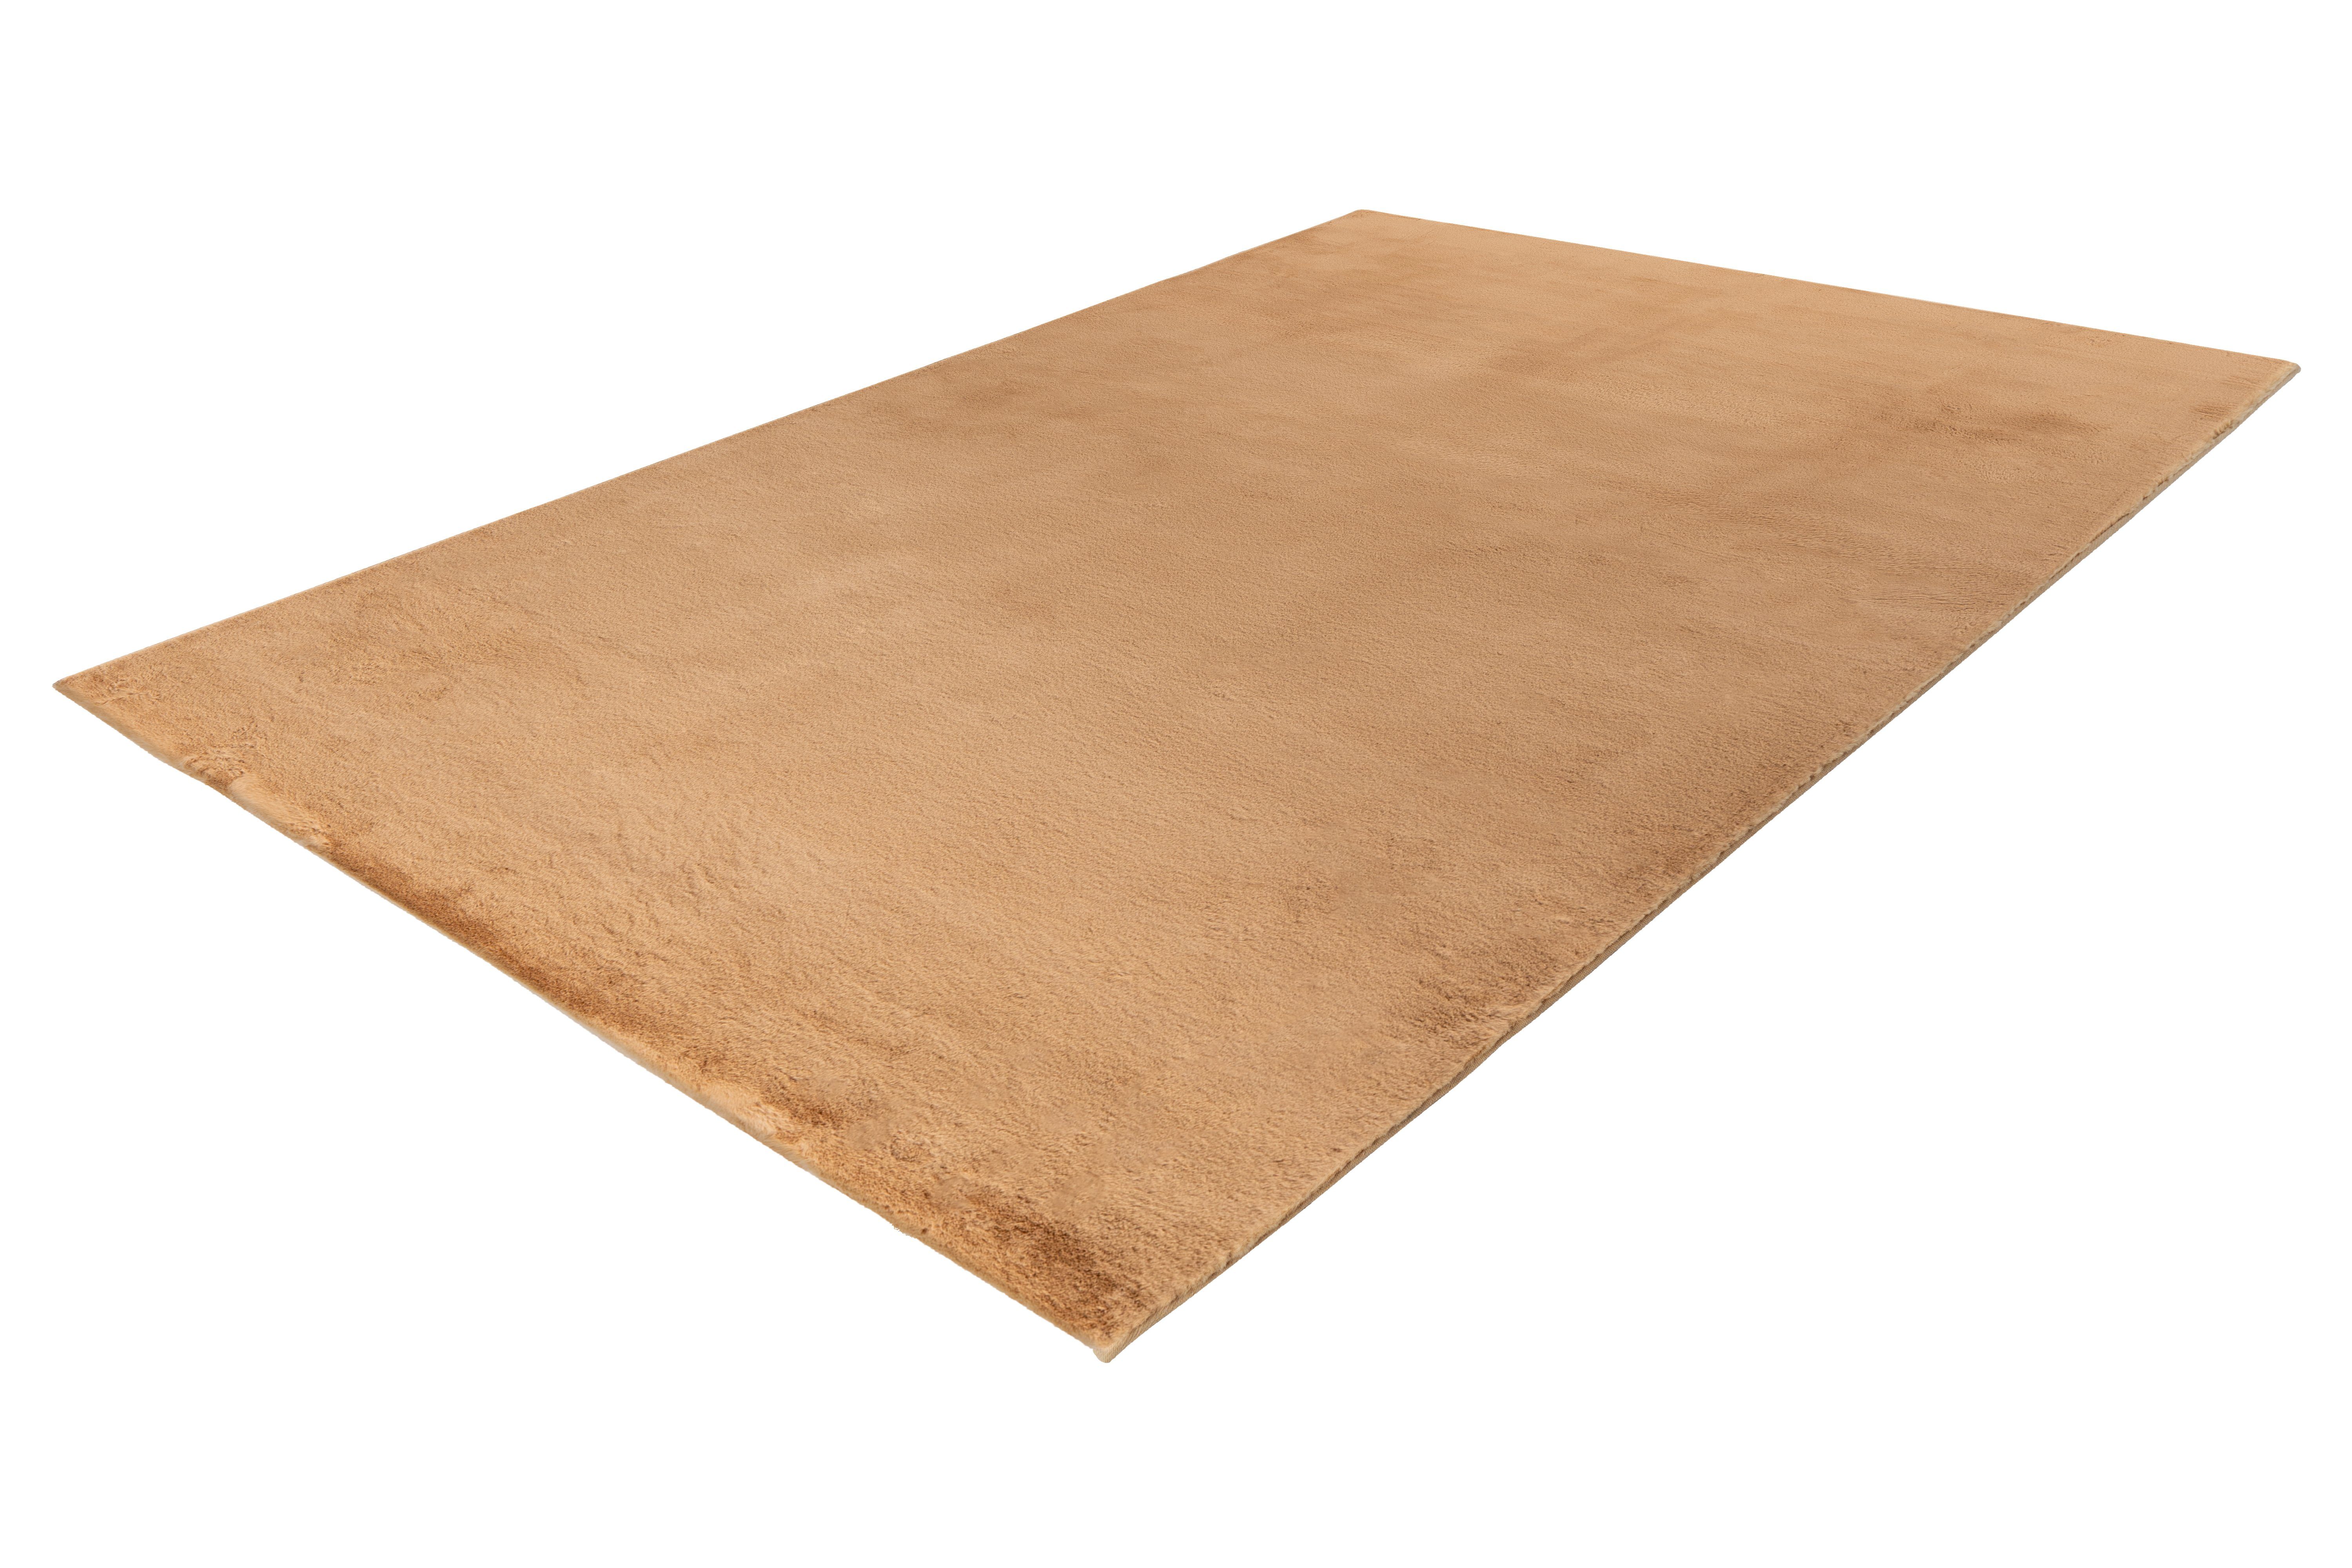 Teppich Rabbit Prime 125, me gusta, rechteckig, Höhe: 18 mm, Kaninchenfell Haptik, flauschig weich, geeignet für Fußbodenheizung